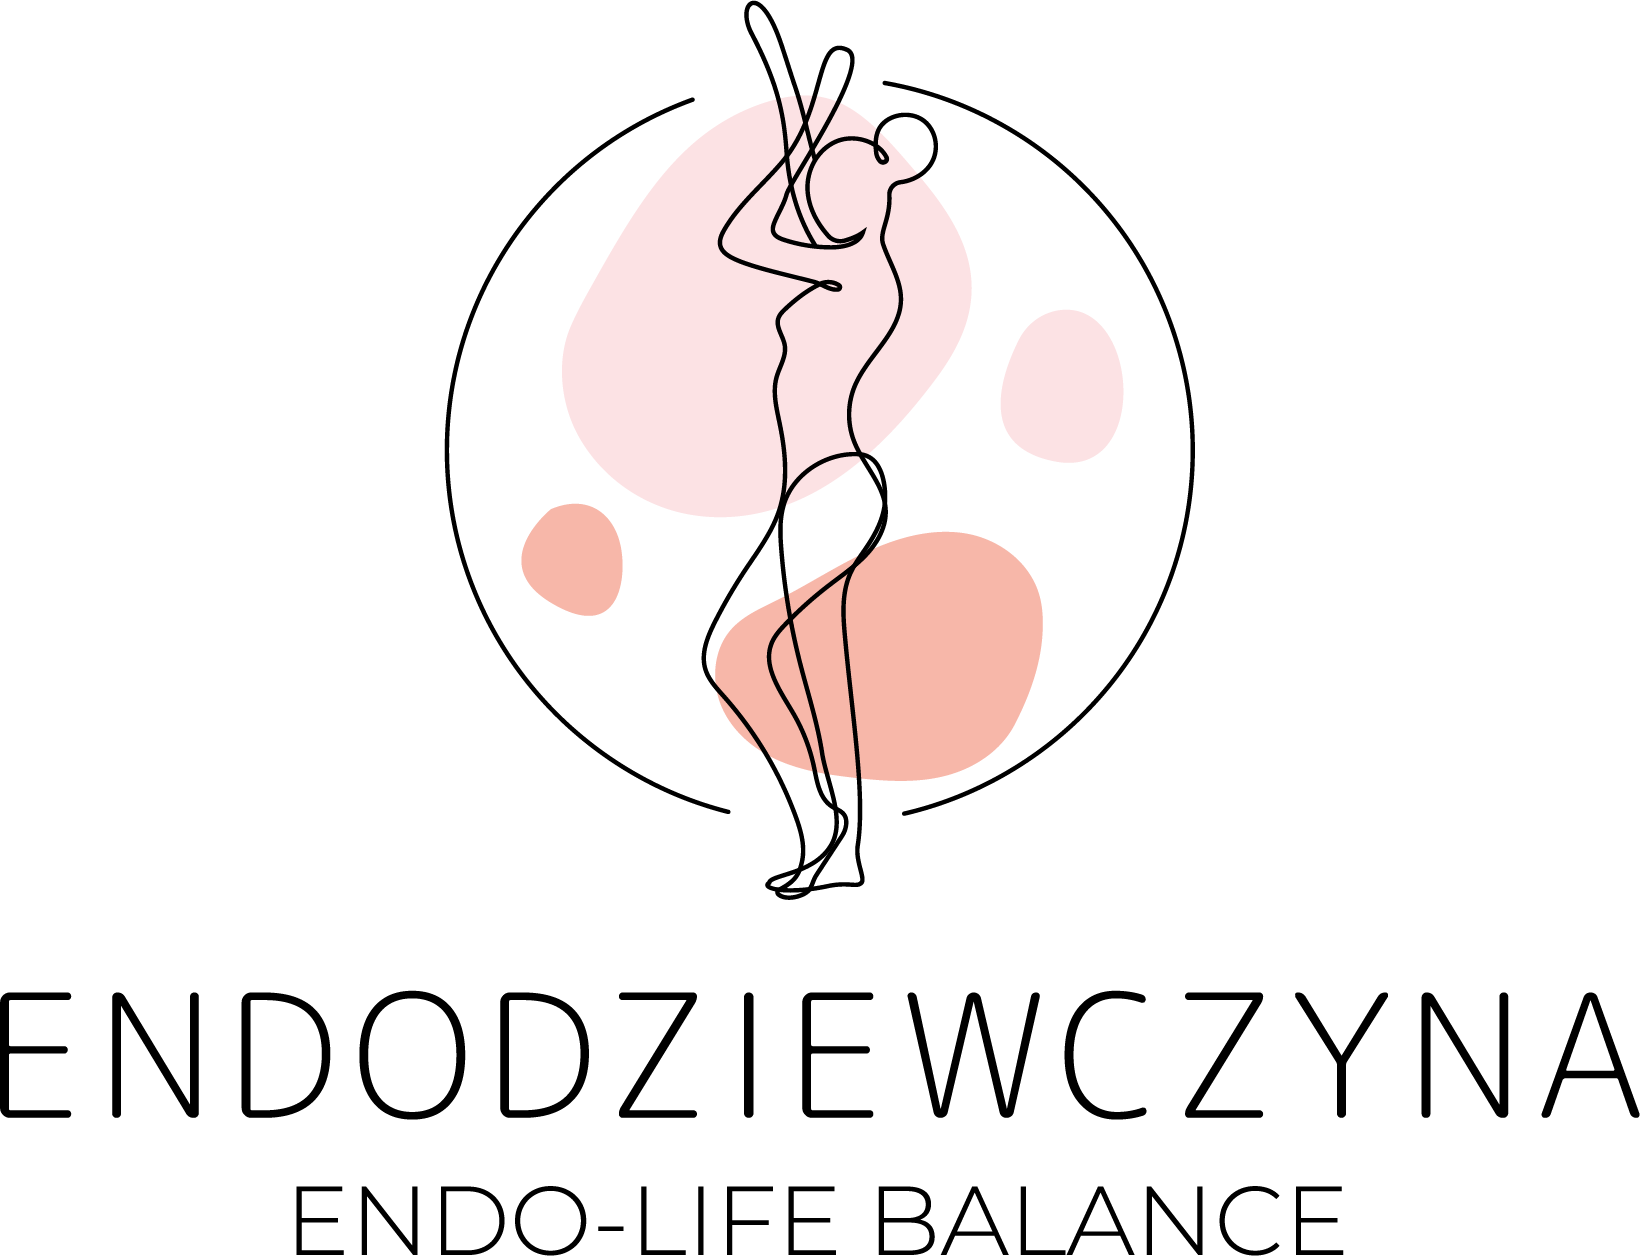 wyświetlaj zawsze po wyszukiwaniu słów: "endometrioza blog", "blog o endometriozie", "blog endometrioza", "endo-life balance"